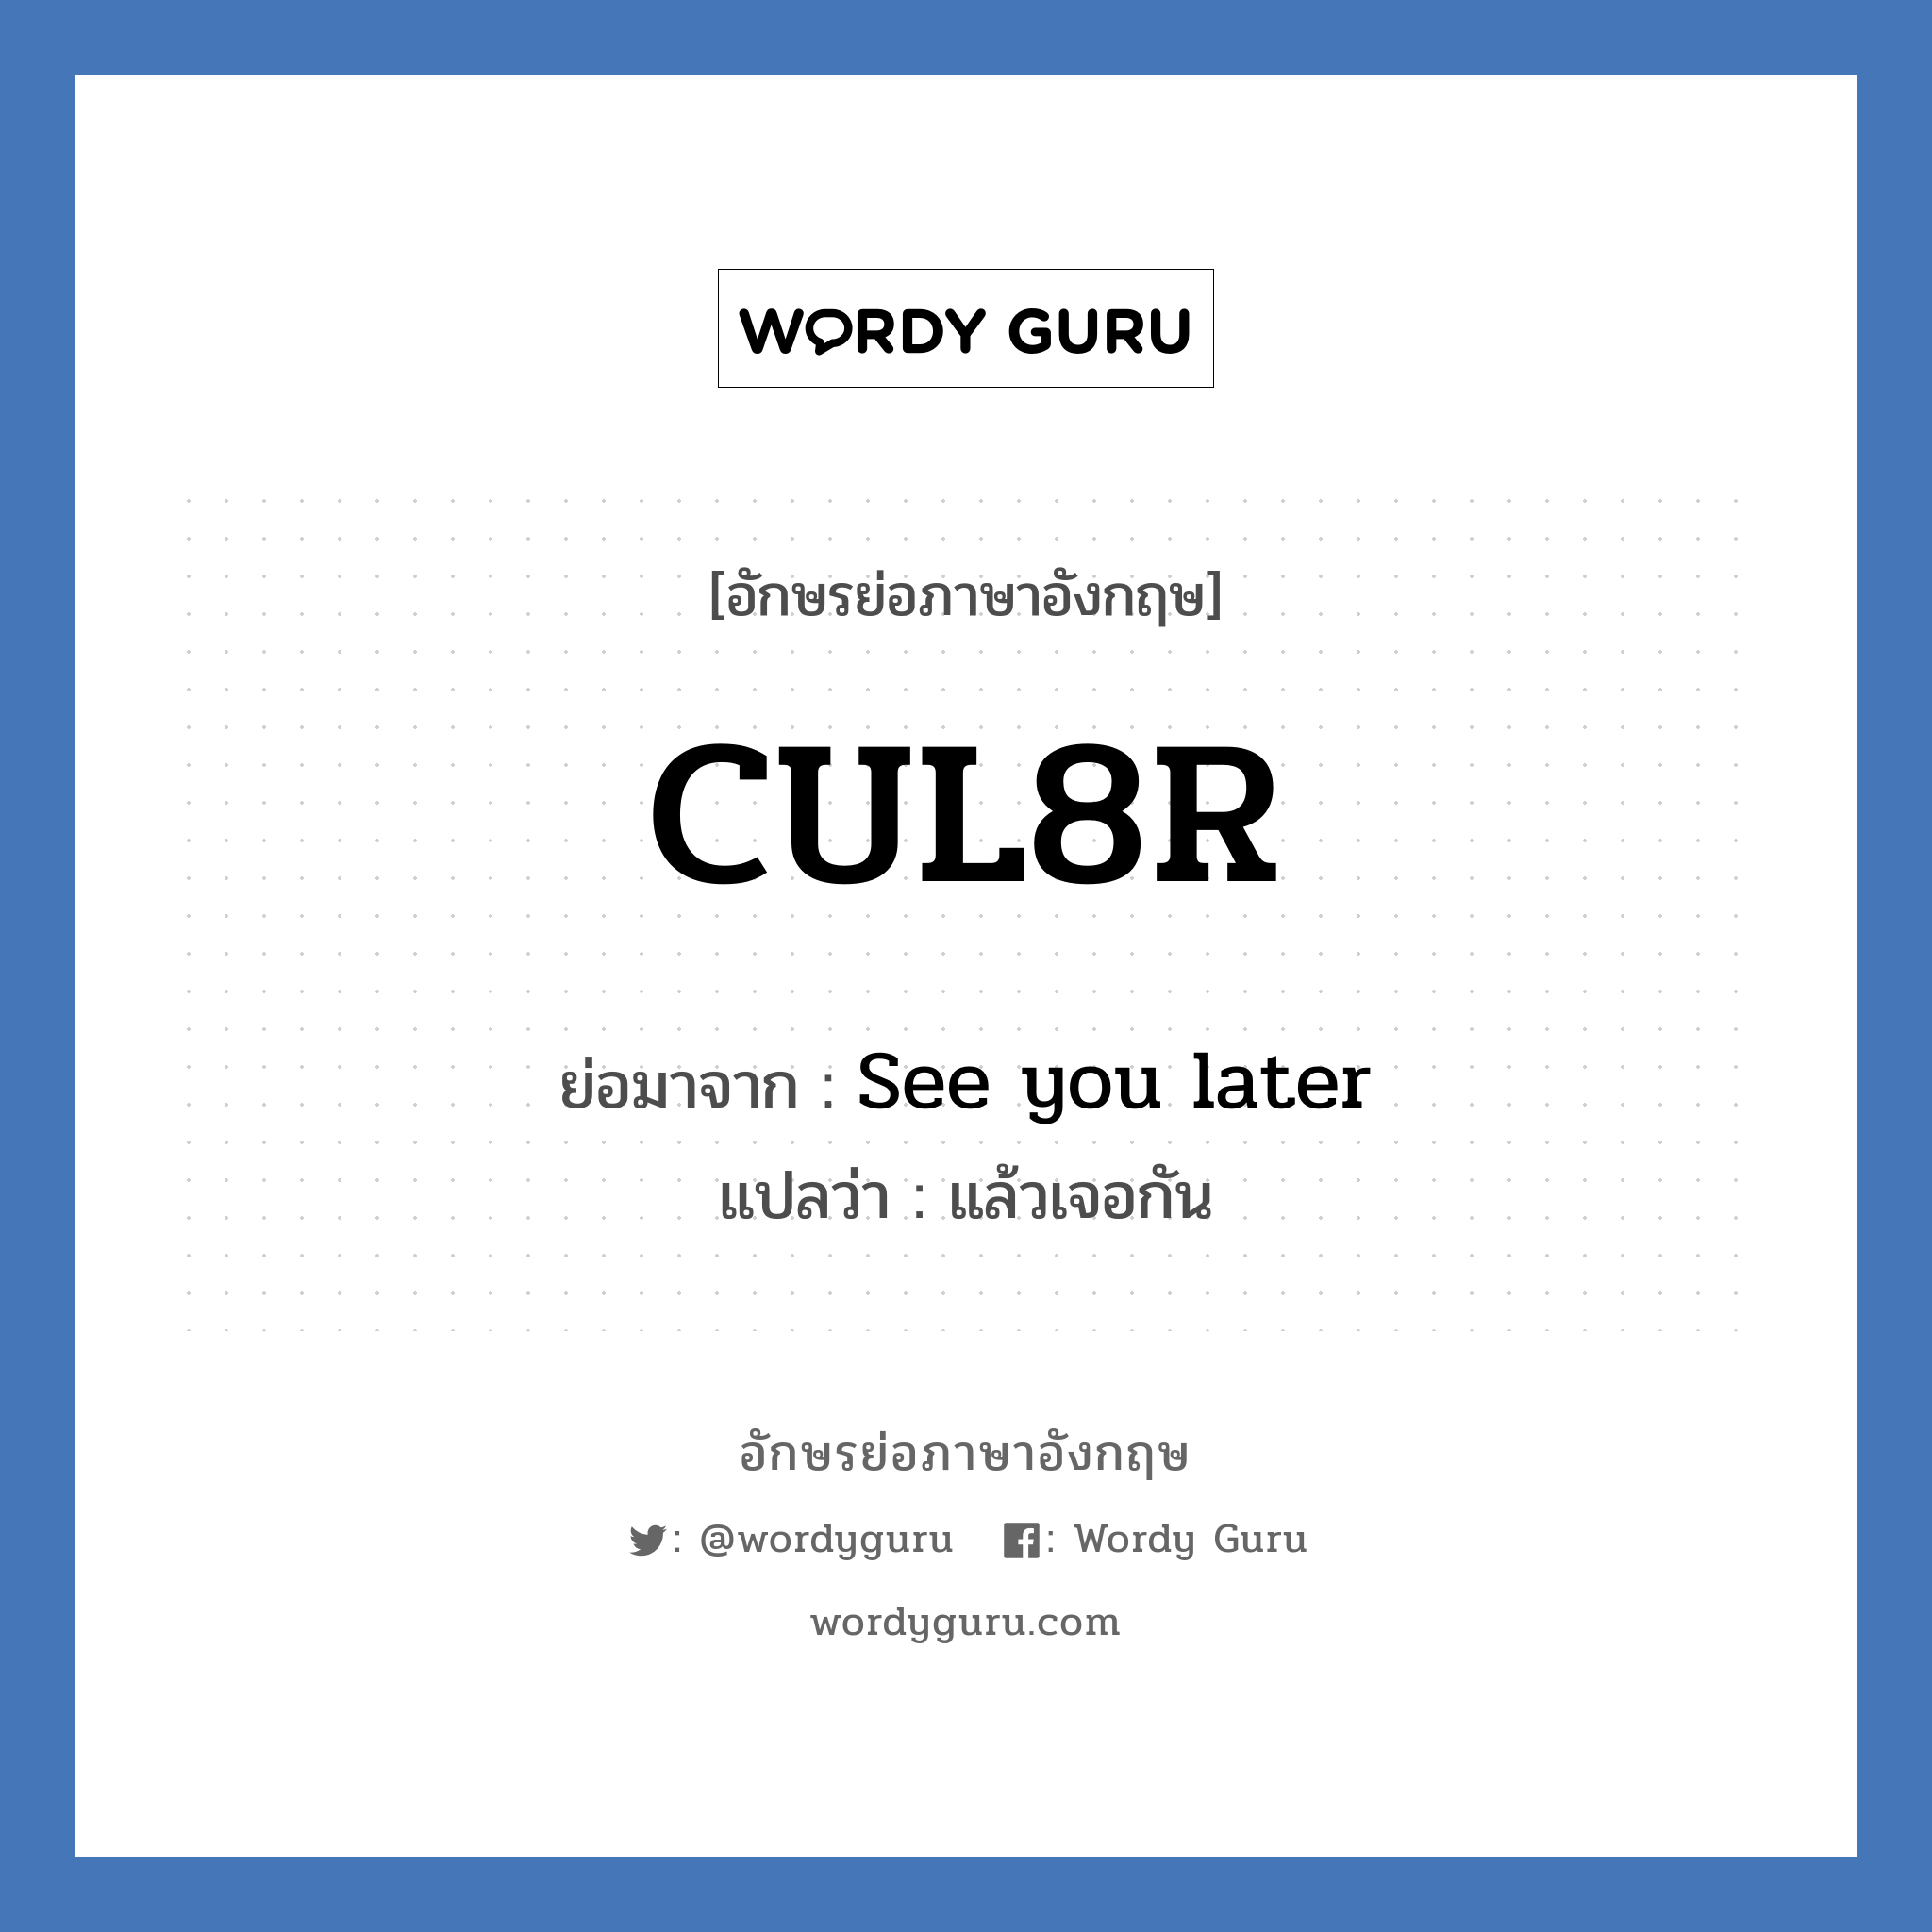 CUL8R ย่อมาจาก? แปลว่า?, อักษรย่อภาษาอังกฤษ CUL8R ย่อมาจาก See you later แปลว่า แล้วเจอกัน